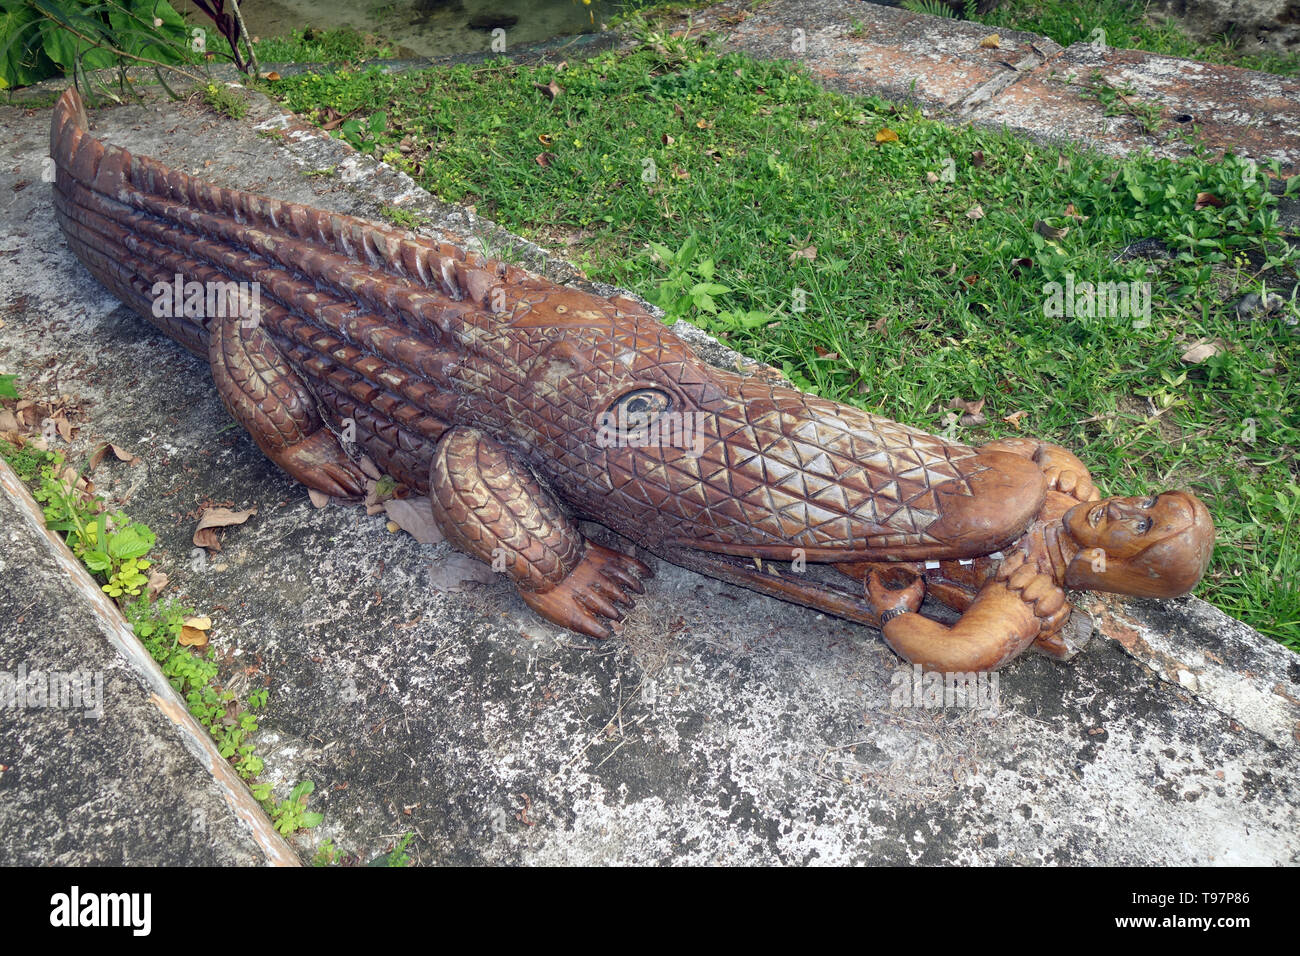 Sculpture en bois d'une personne, d'un manger crocodile cascades de Mele, près de Port Vila, Vanuatu Efate,. Pas de PR Banque D'Images